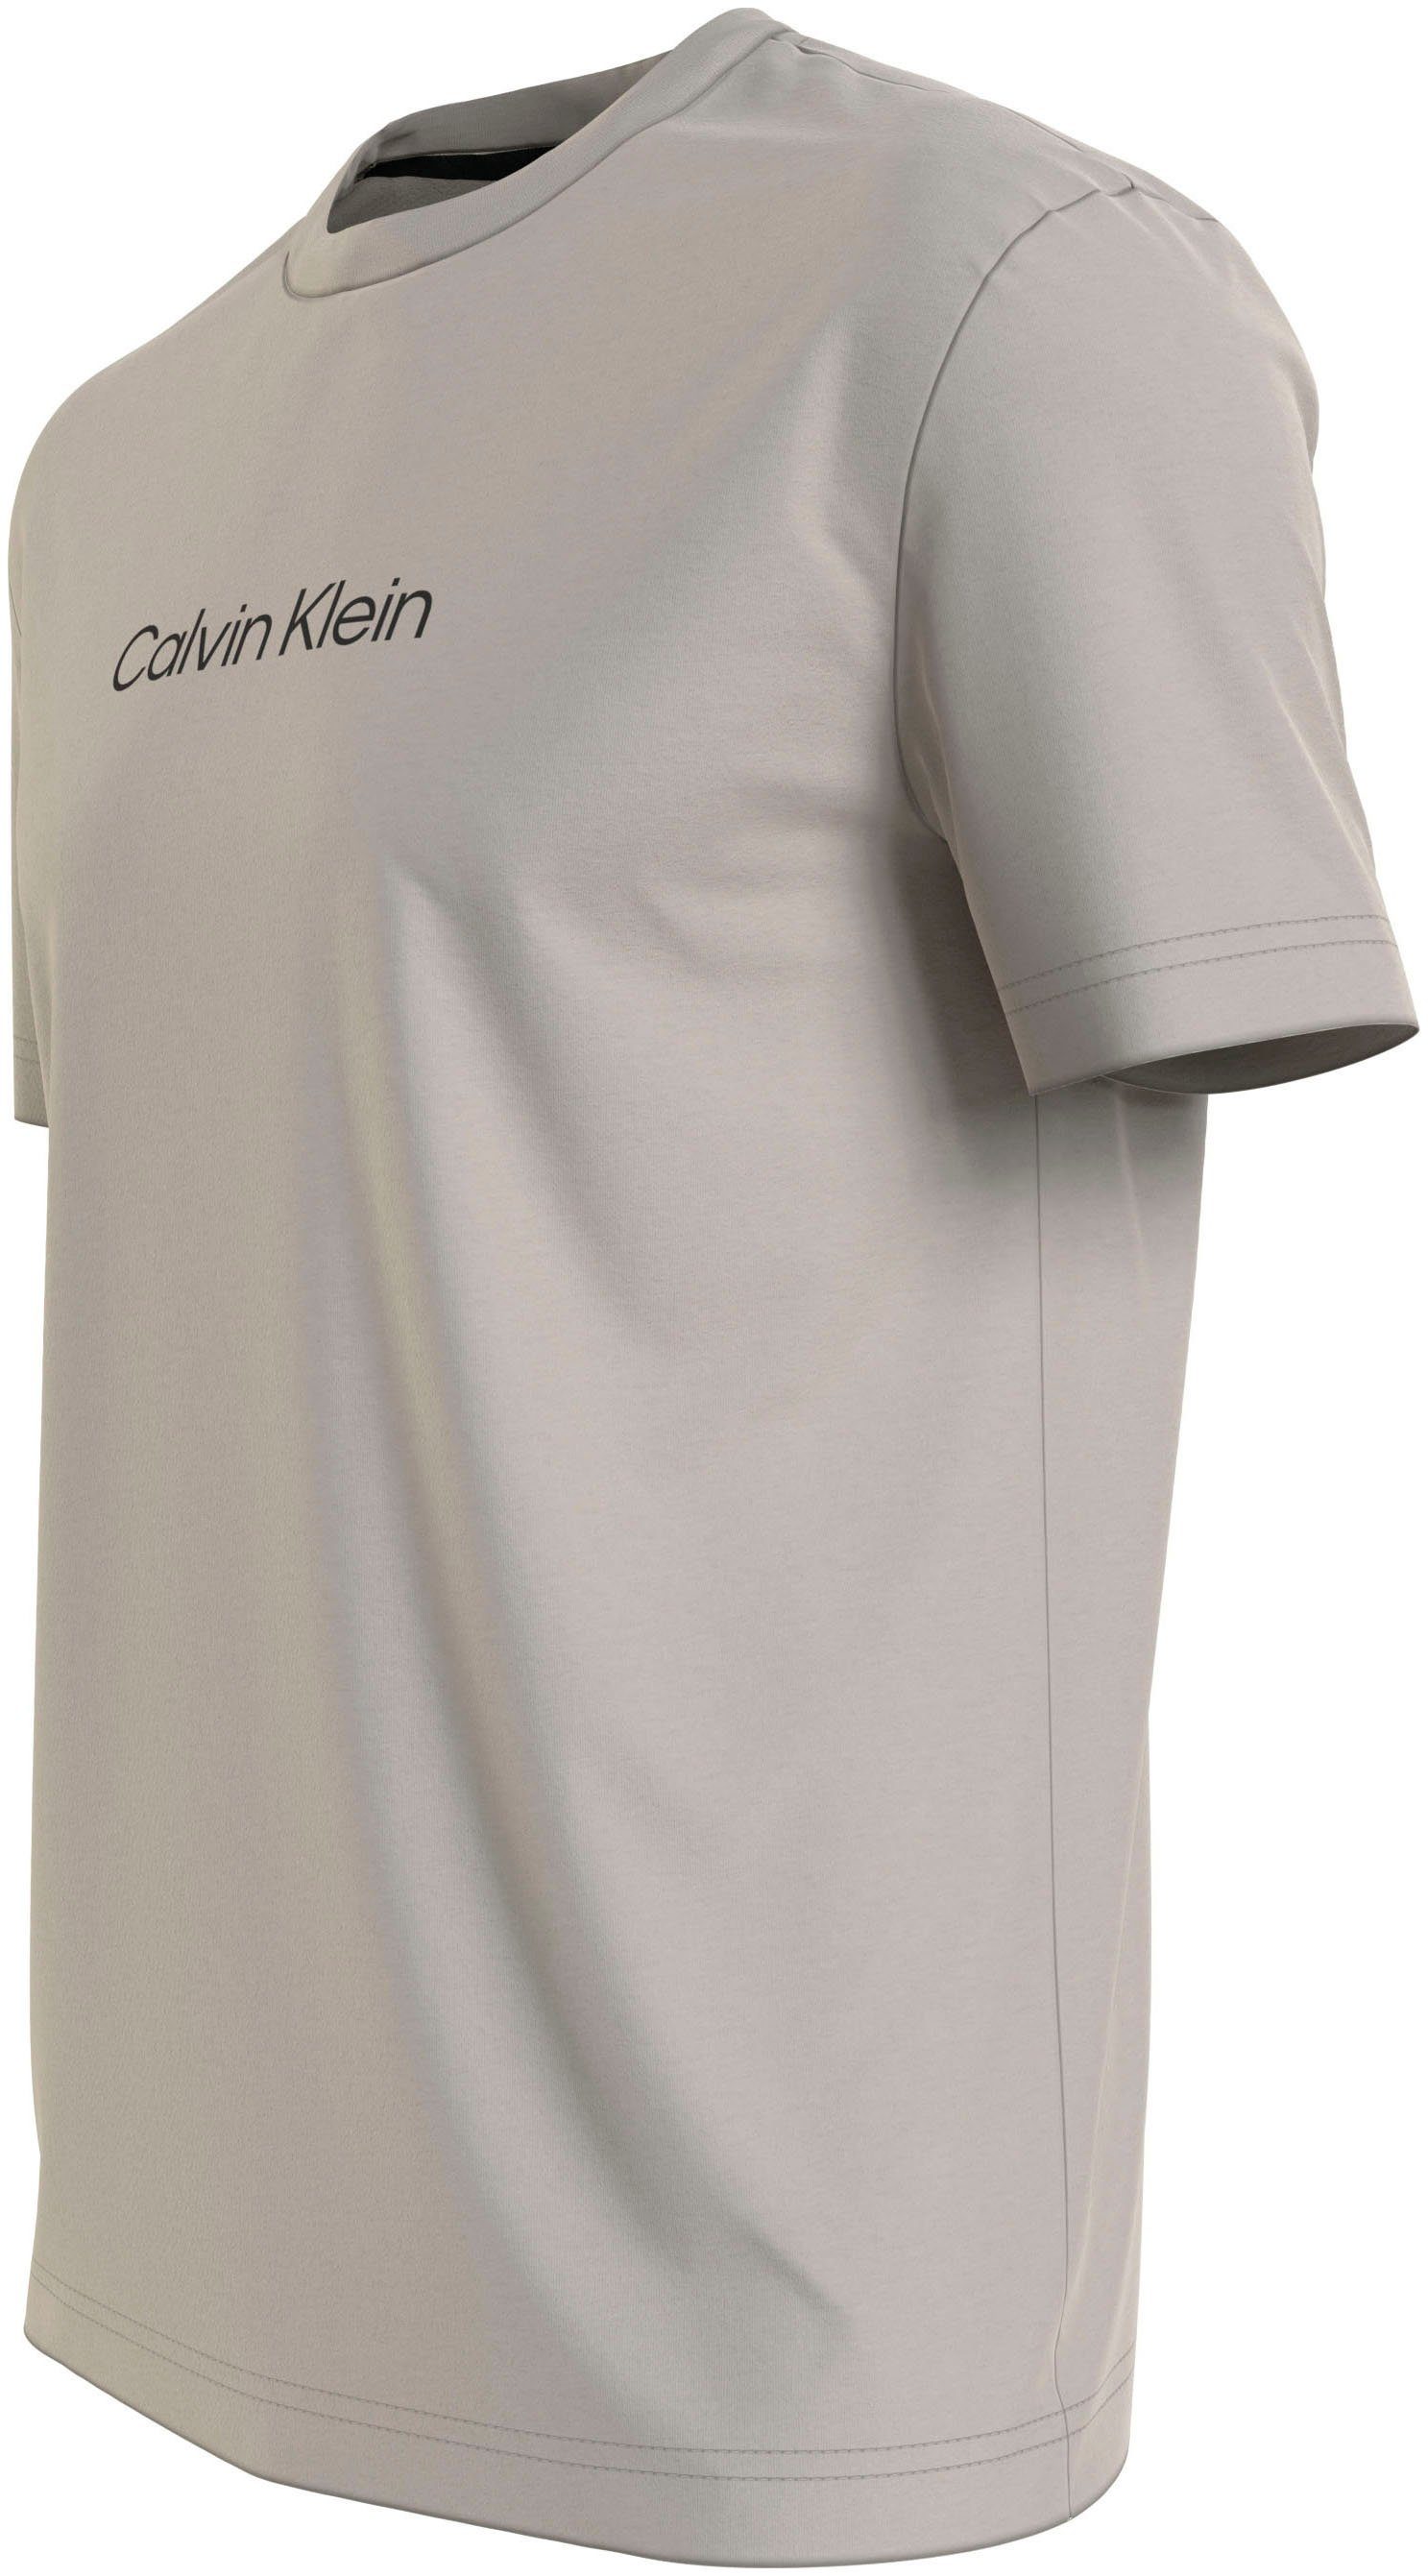 Calvin Klein LOGO Stony Markenlabel COMFORT T-SHIRT Beige mit T-Shirt HERO aufgedrucktem